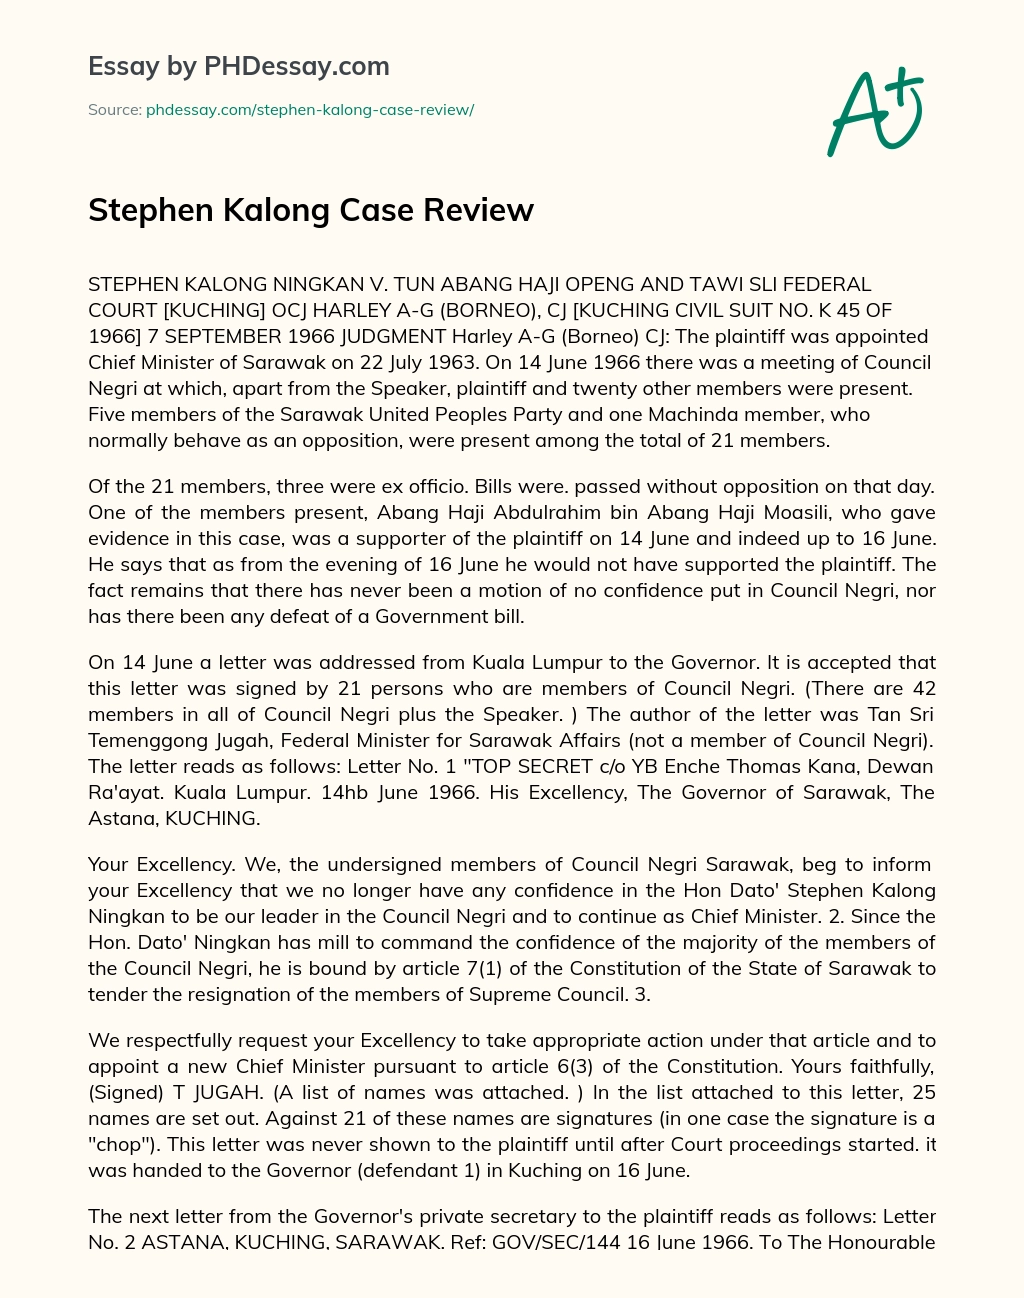 Stephen Kalong Case Review essay